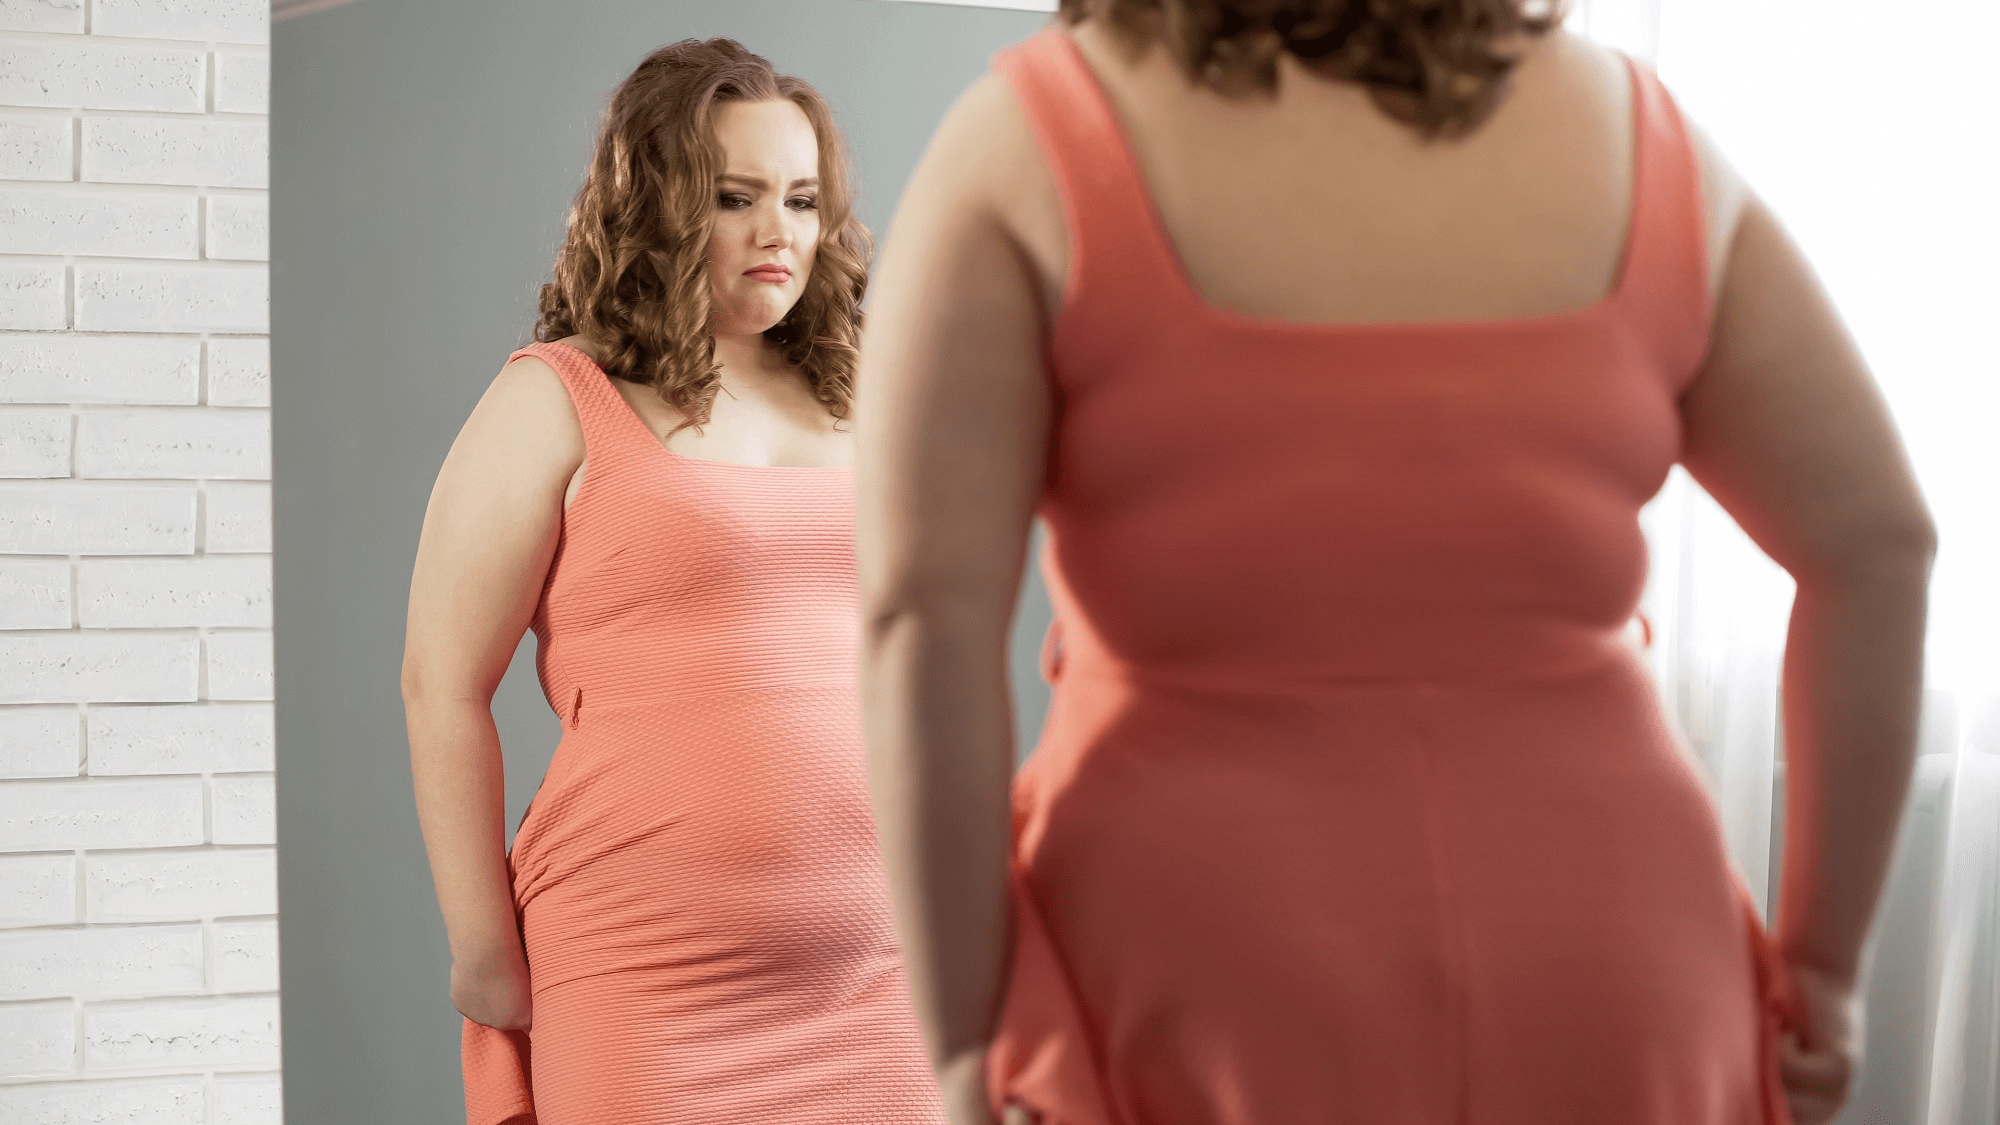 Las personas con sobrepeso tienen un metabolismo más lento